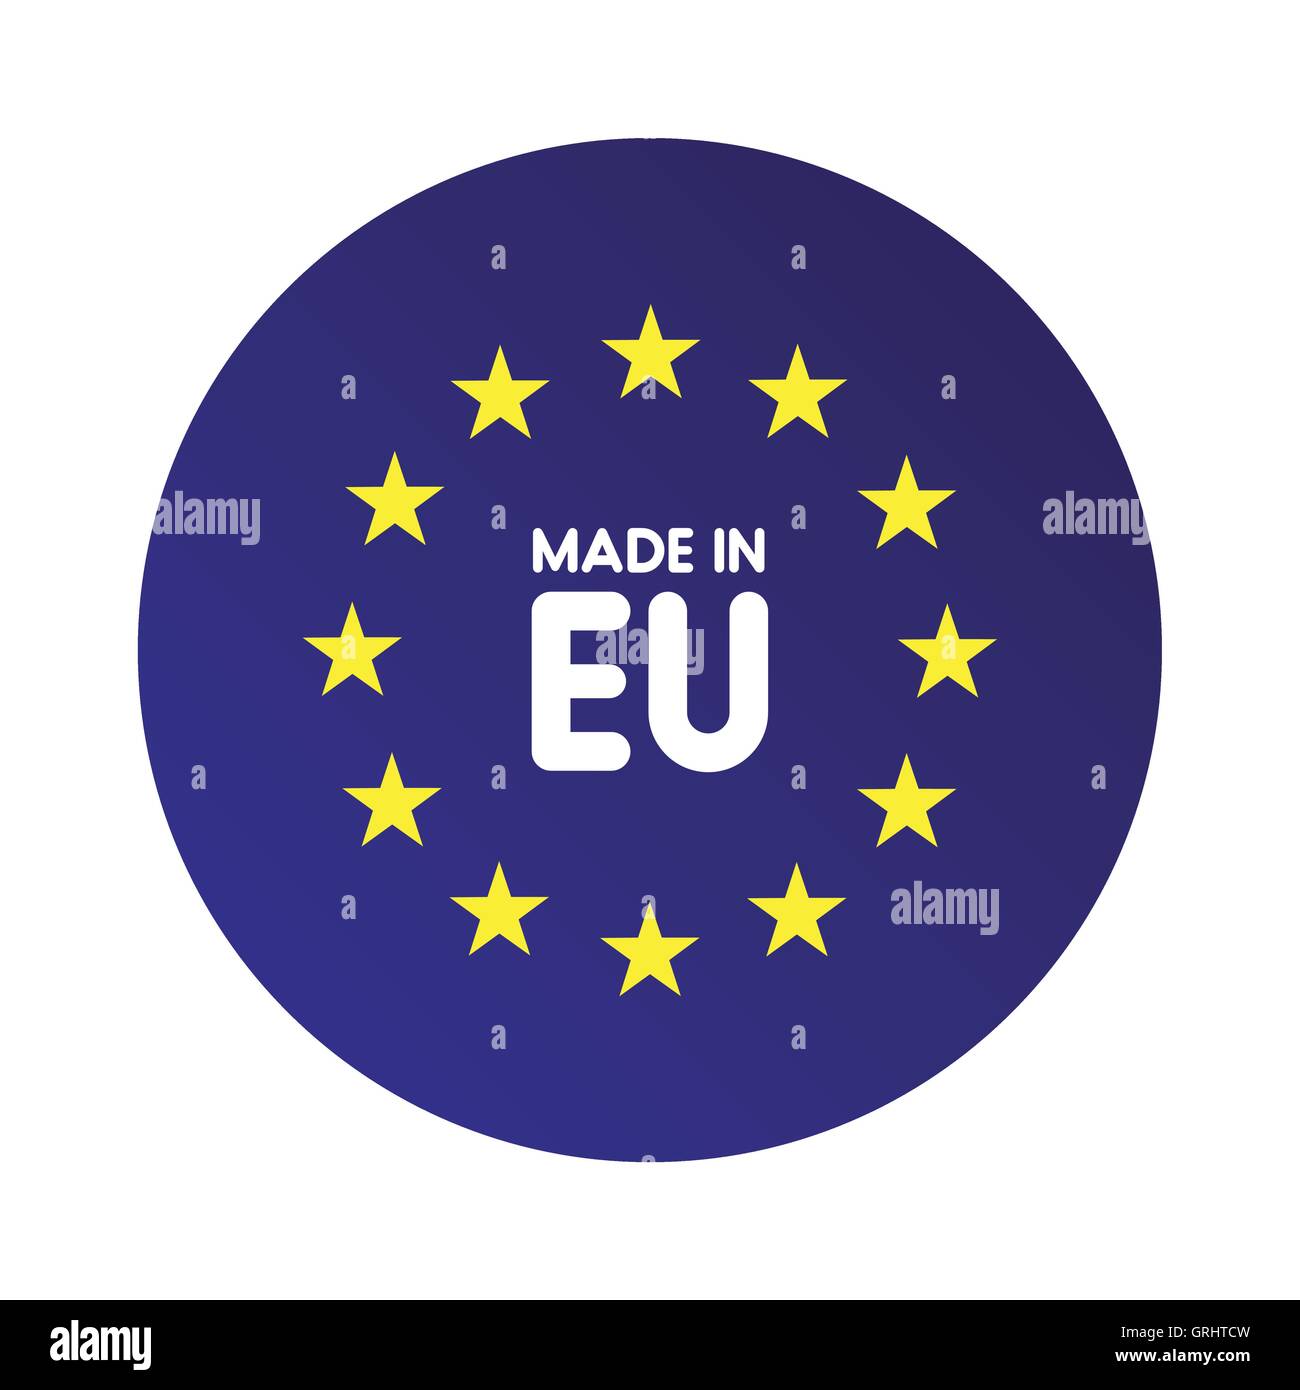 Made in Europe (EU) vector sign Stock Vector